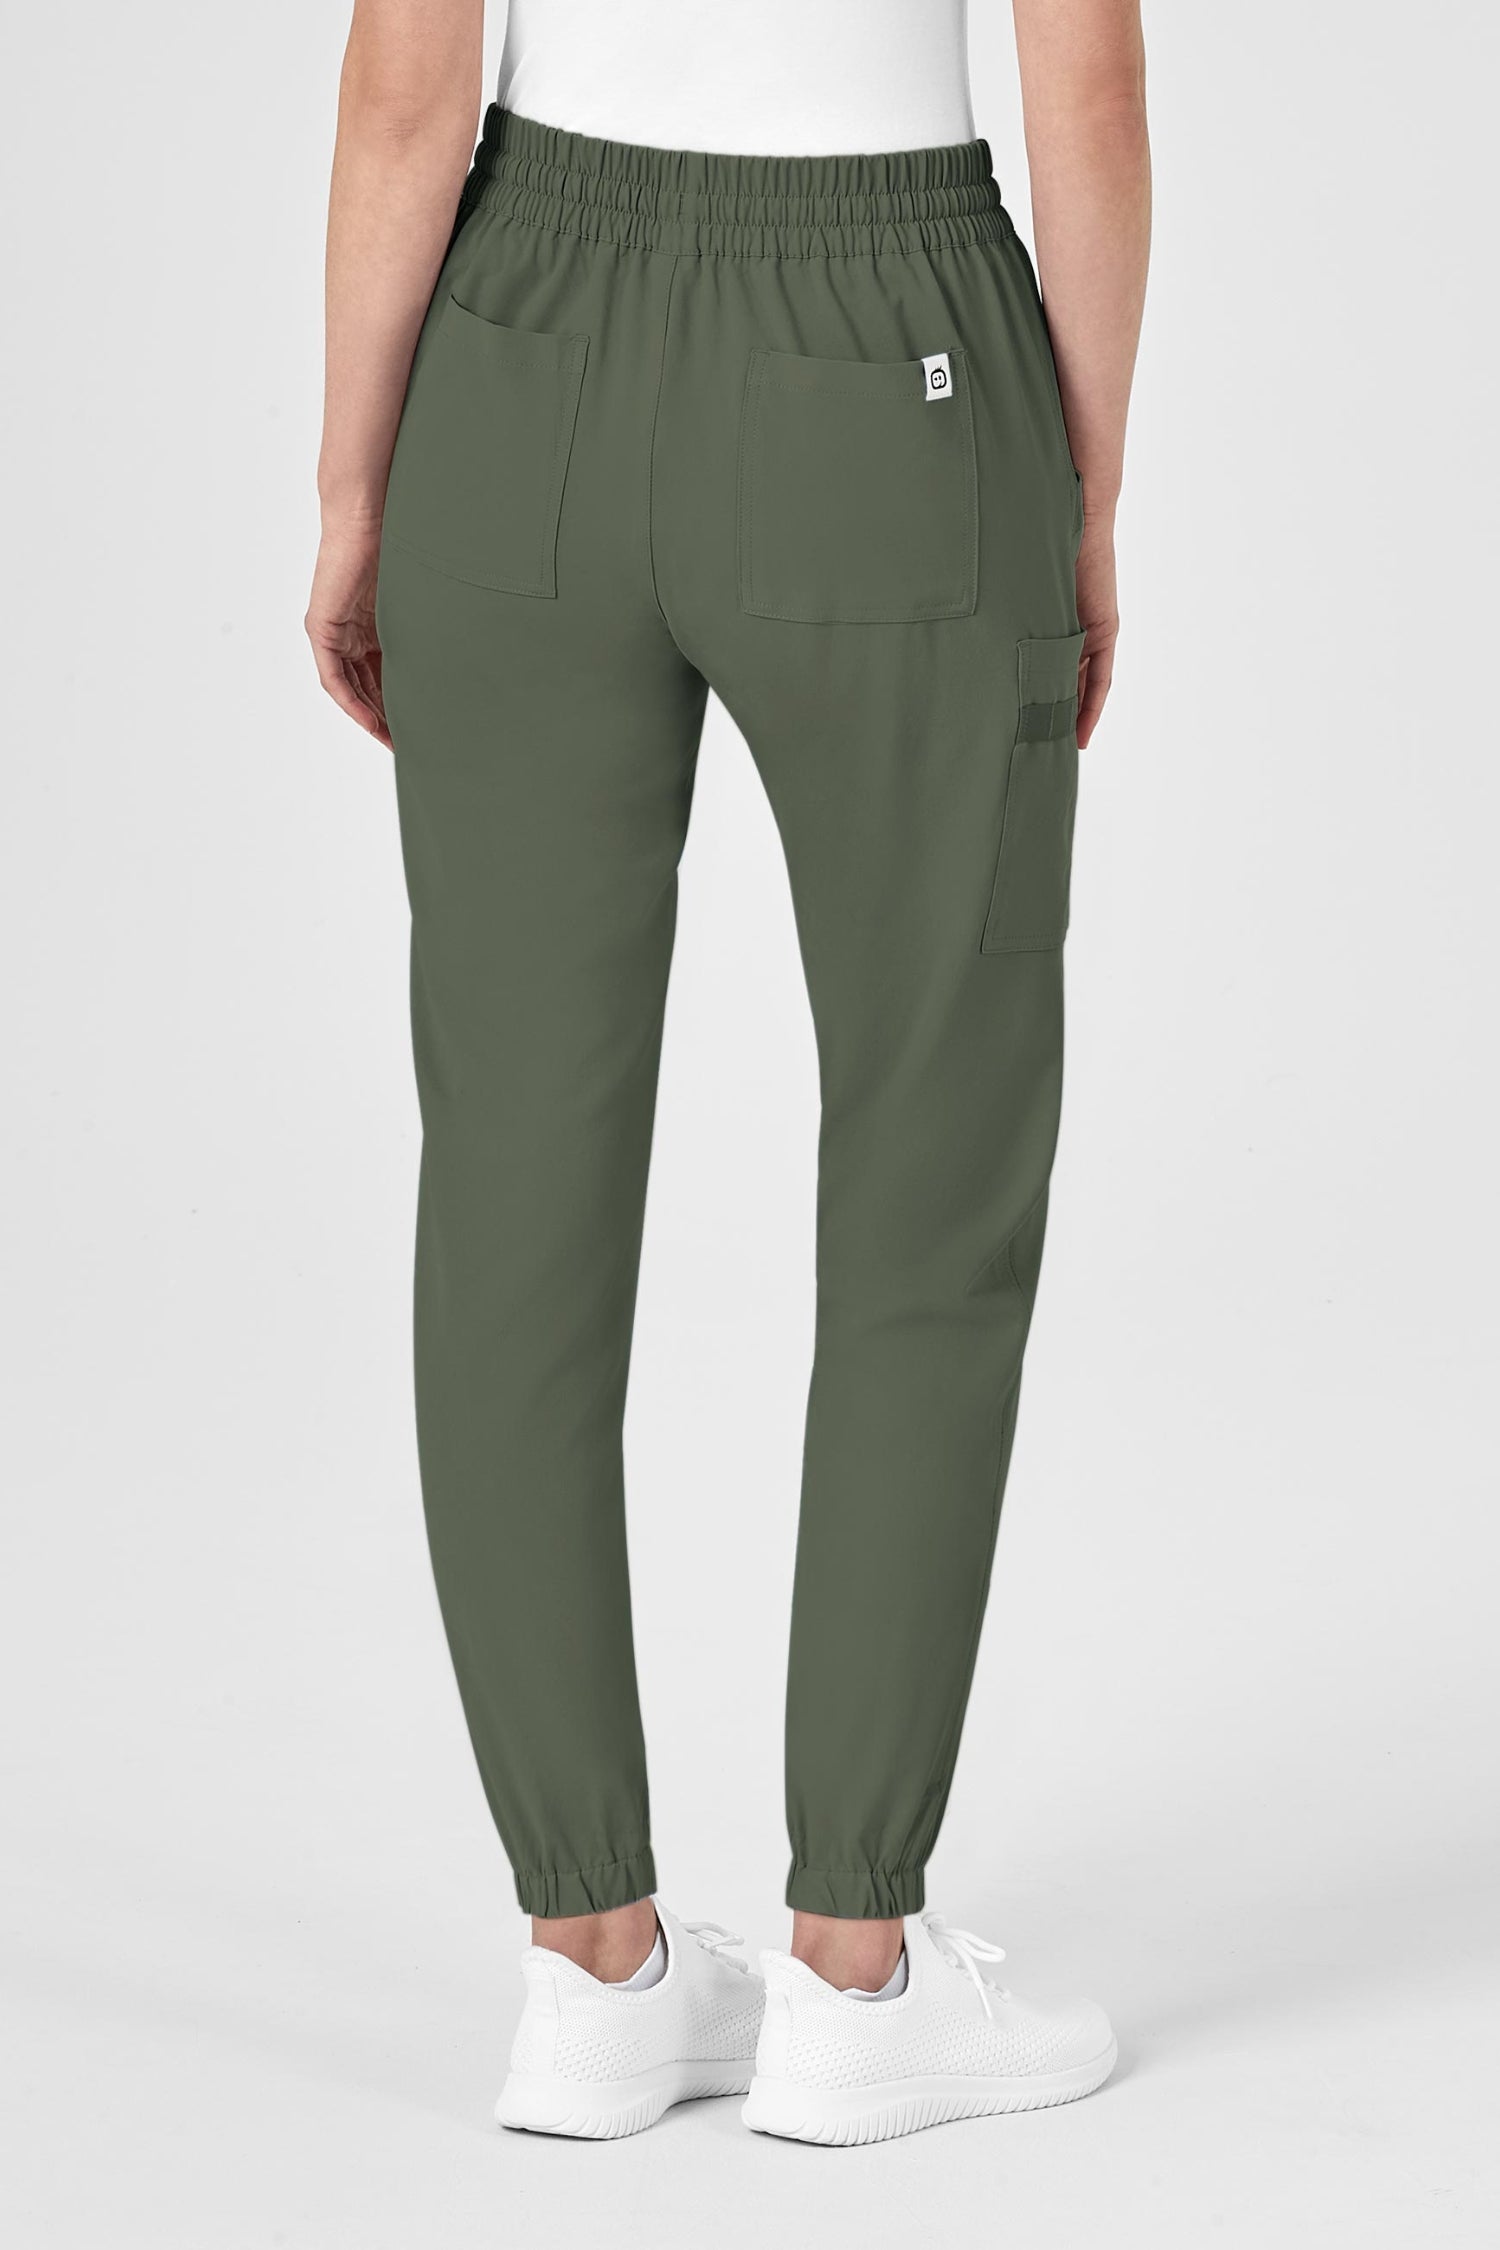 Pantalon cargo vert olive The North Face pour femme avec poches à fermeture, tenue médicale